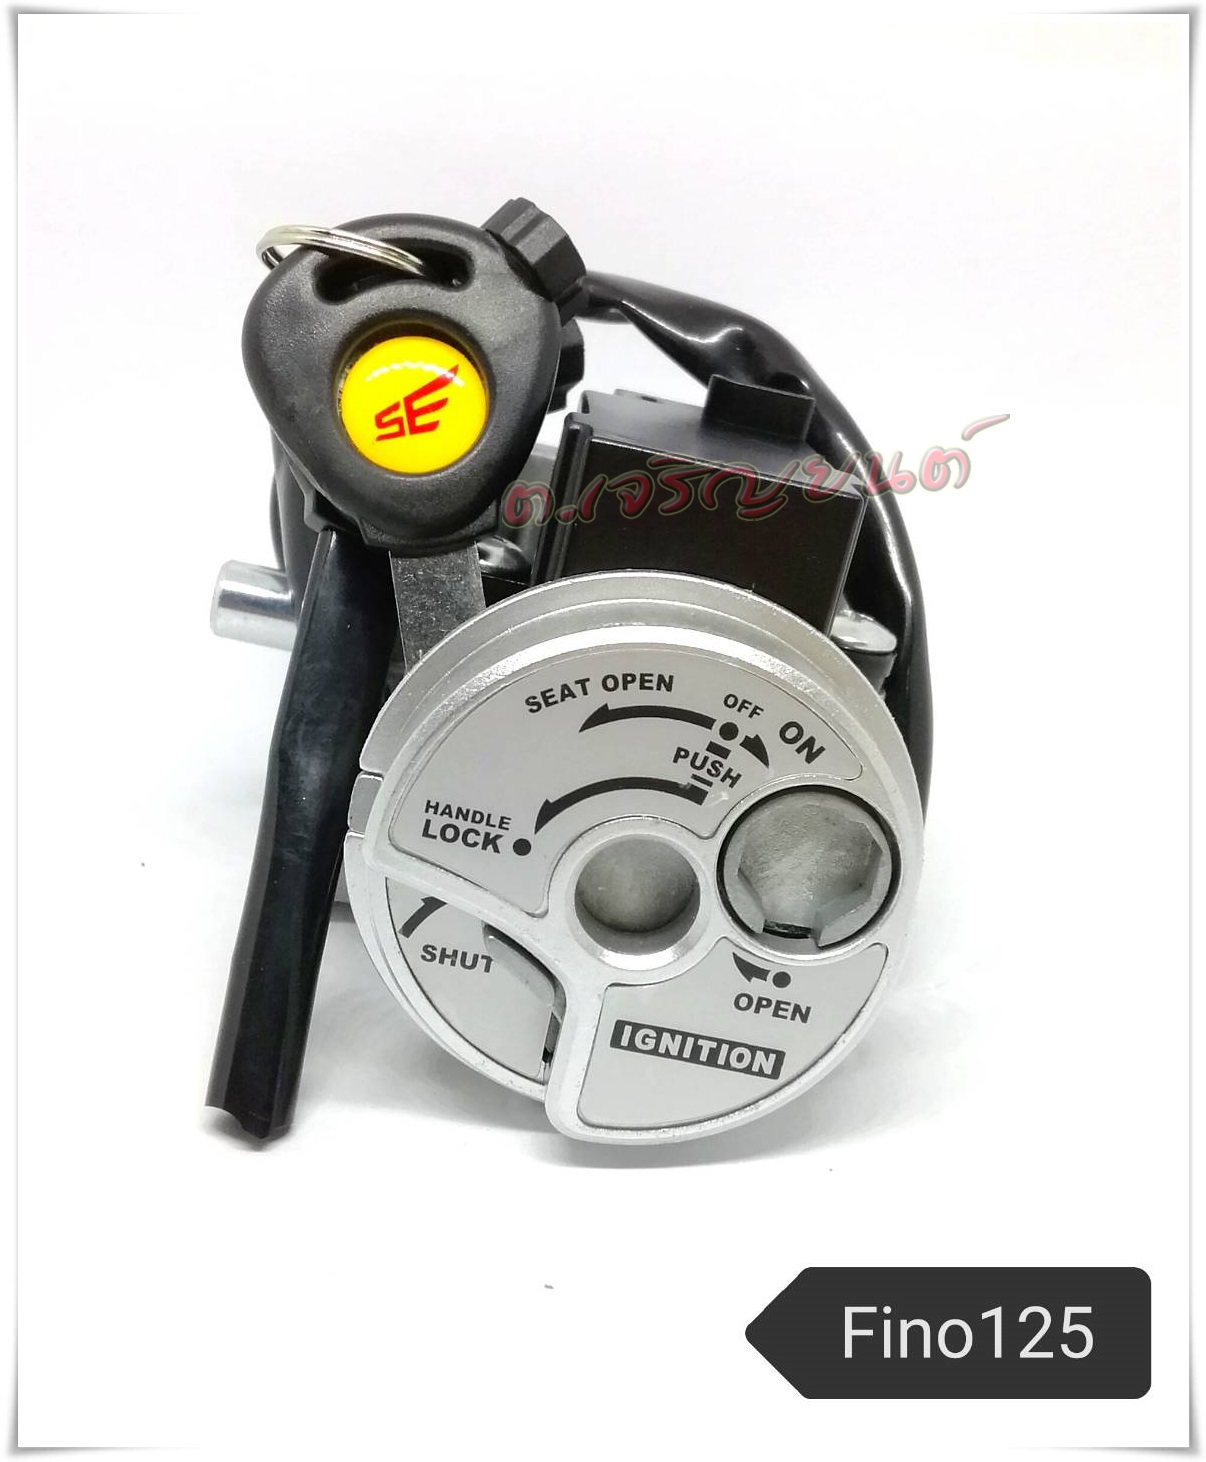 สวิทช์กุญแจ FINO 125 NEW (รุ่นหัวฉีด) เกรดOEM เทียบเท่าแท้